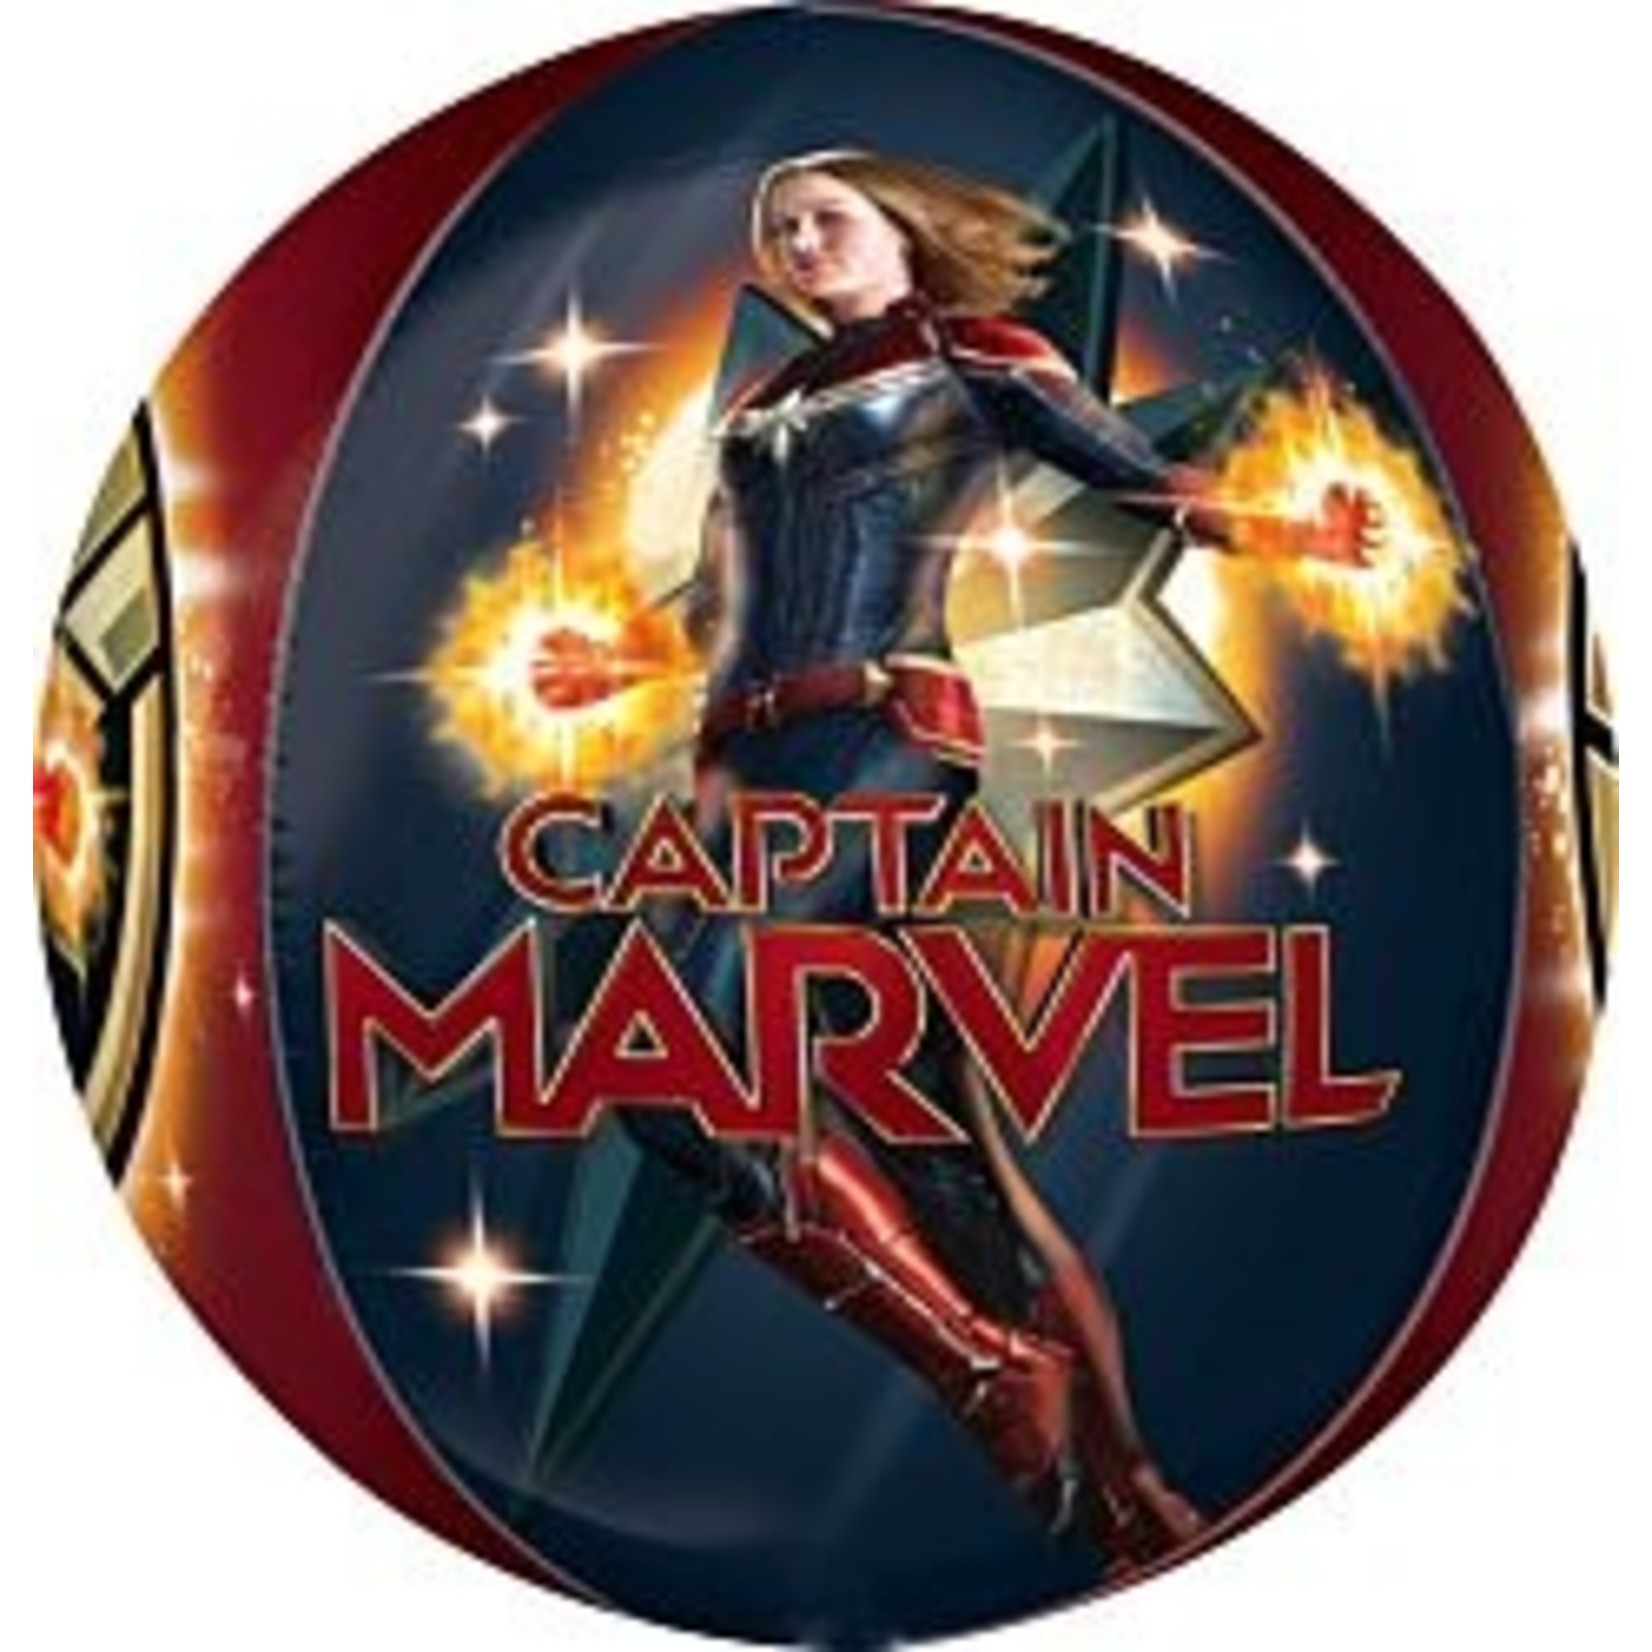 16" Captain Marvel Orbz